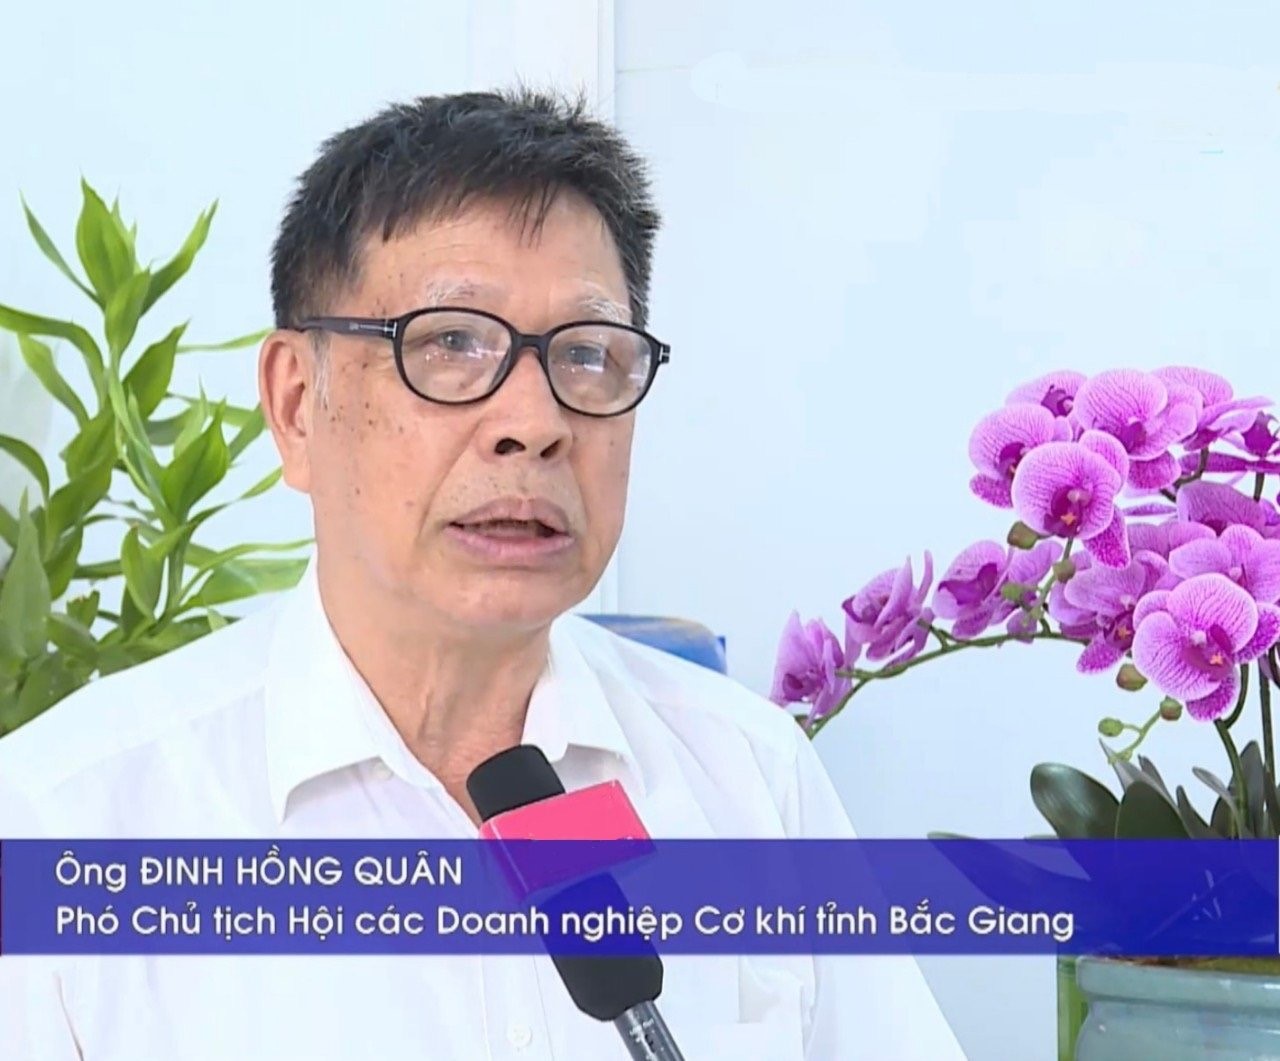 Hội các Doanh nghiệp Cơ khí tỉnh Bắc Giang: Đổi mới hoạt động, để nâng cao vị thế và uy tín cho hội viên